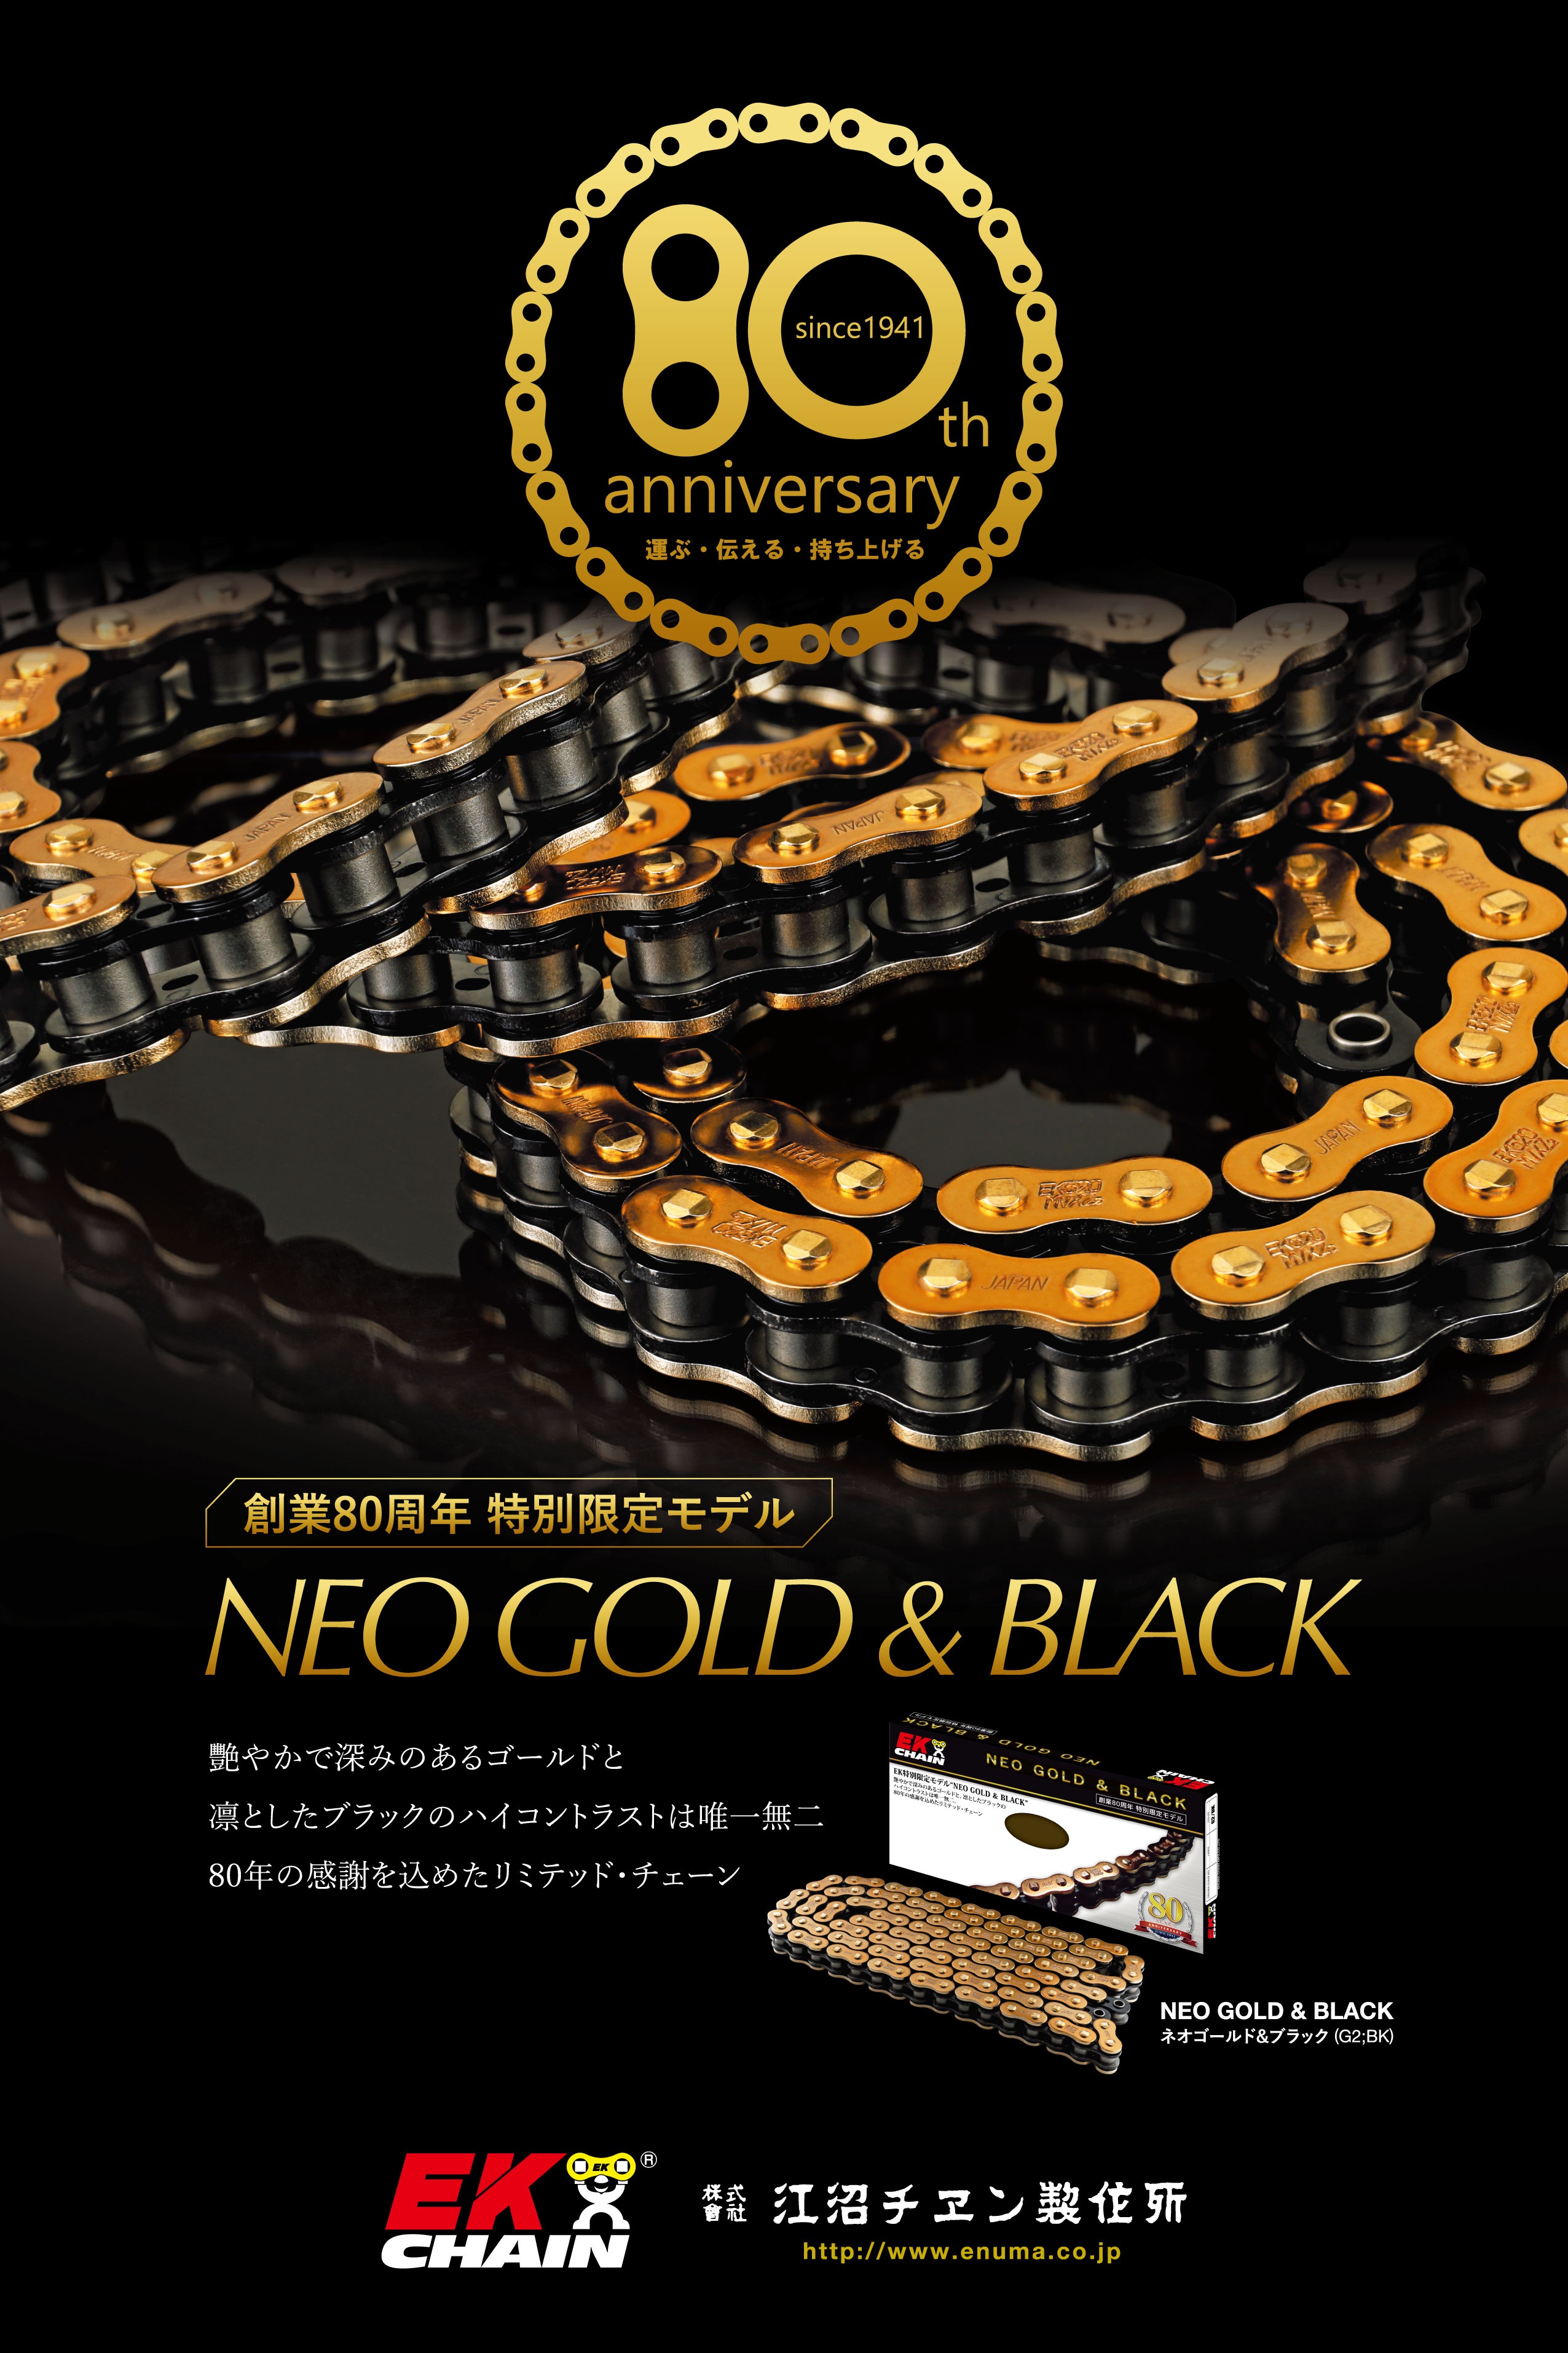 江沼チヱン EK 創業 80周年記念限定モデル  NEO GOLD & BLACKメーカーチラシ